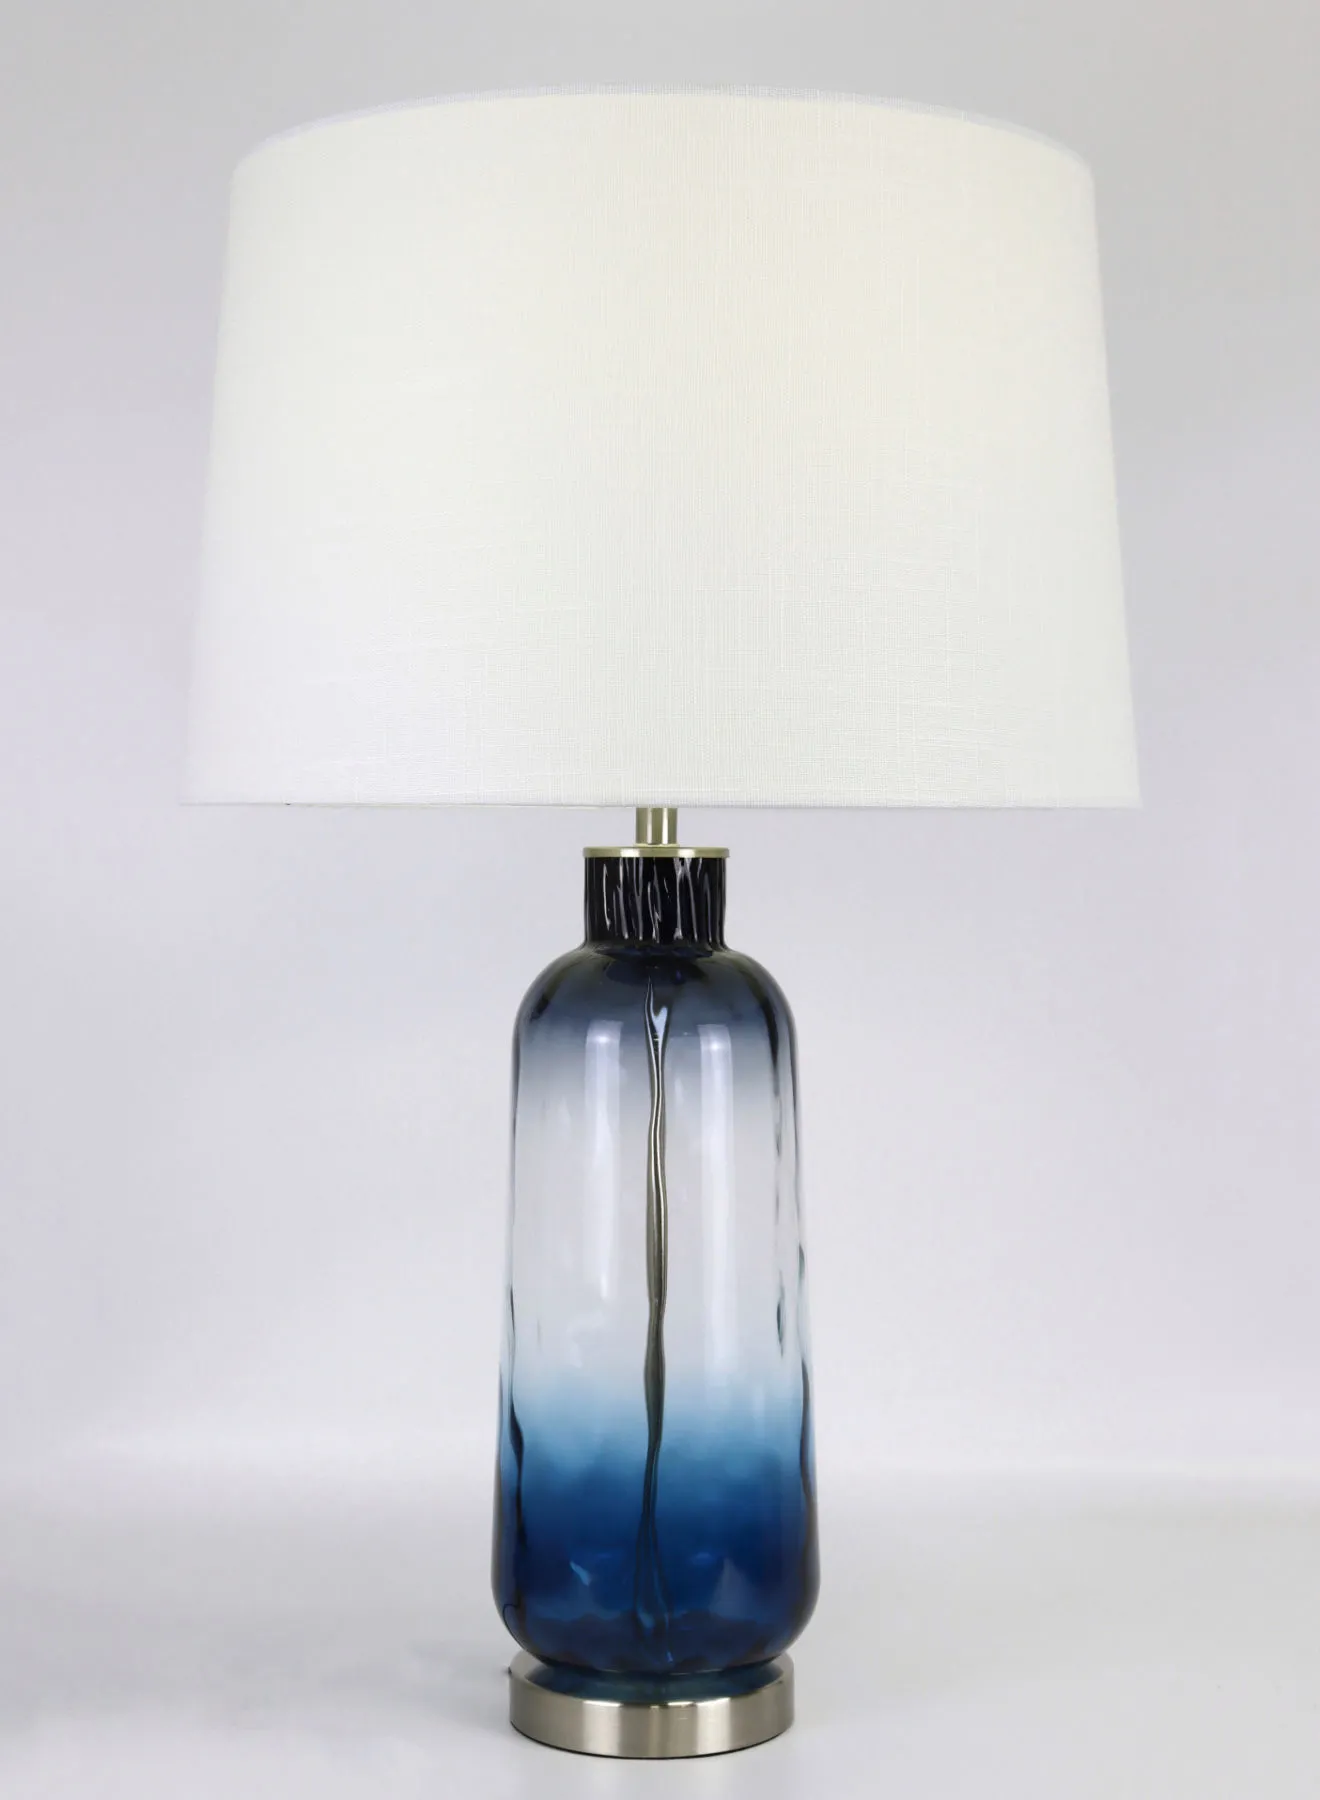 مصباح طاولة زجاجي بتصميم حديث من التبديل ، مادة فريدة من نوعها ذات جودة فاخرة لمنزل أنيق مثالي RSN71031 أزرق 17 × 27 أزرق 17 × 27 بوصة